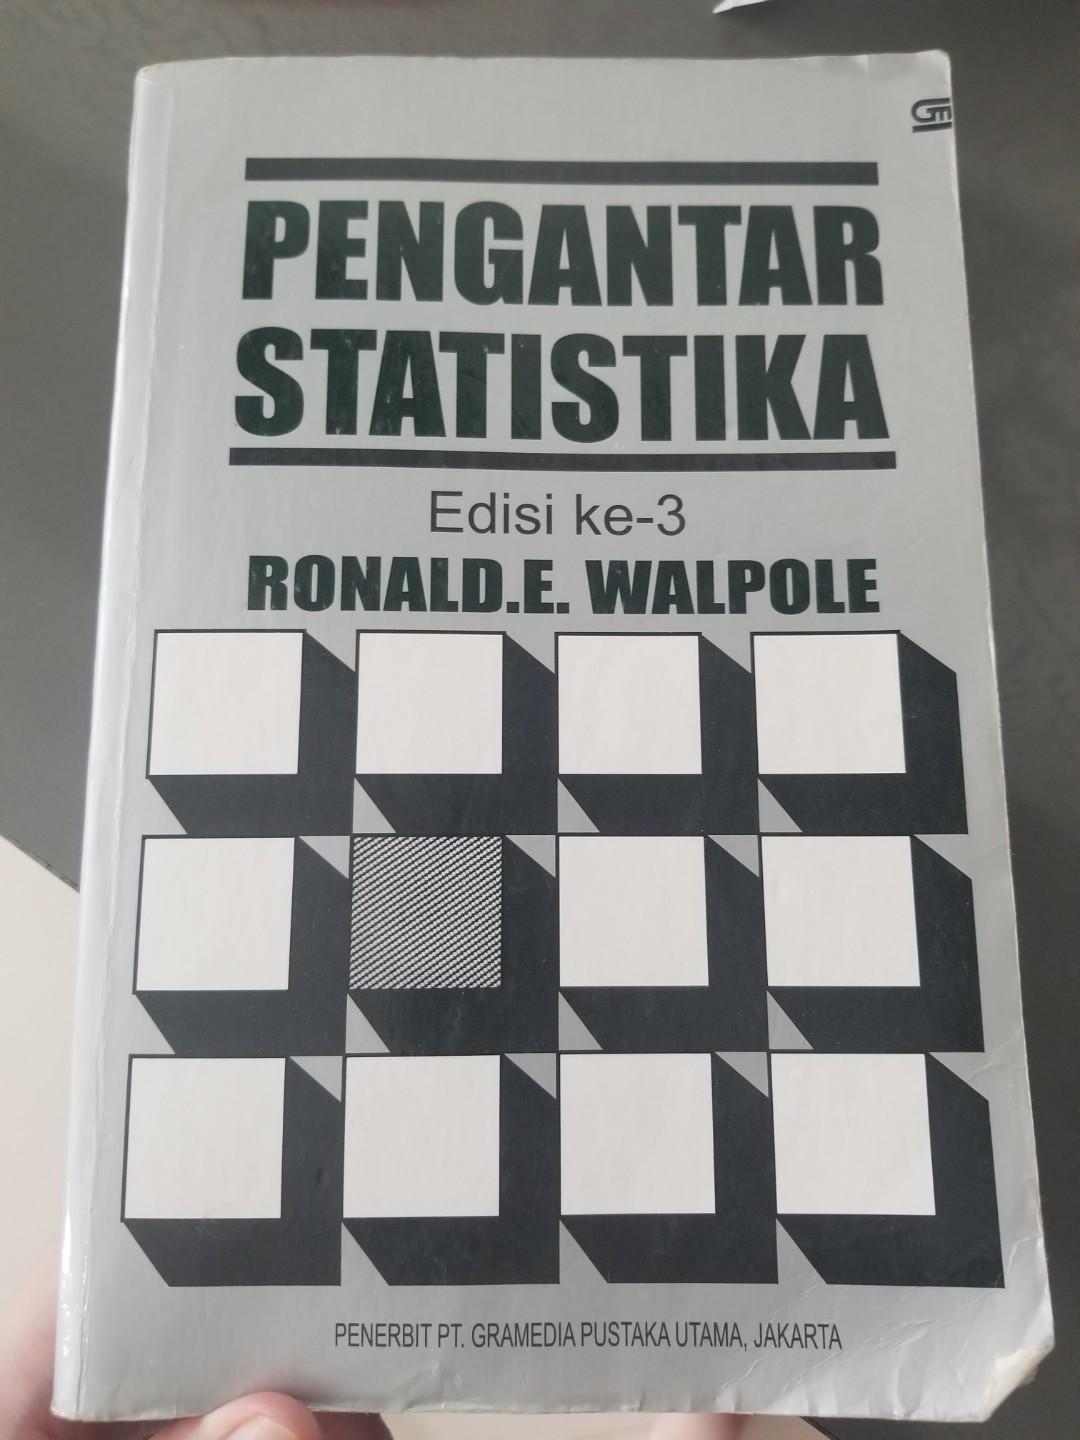 Pengantar Statistika Ronald E Walpole Buku Alat Tulis Buku Pelajaran Di Carousell